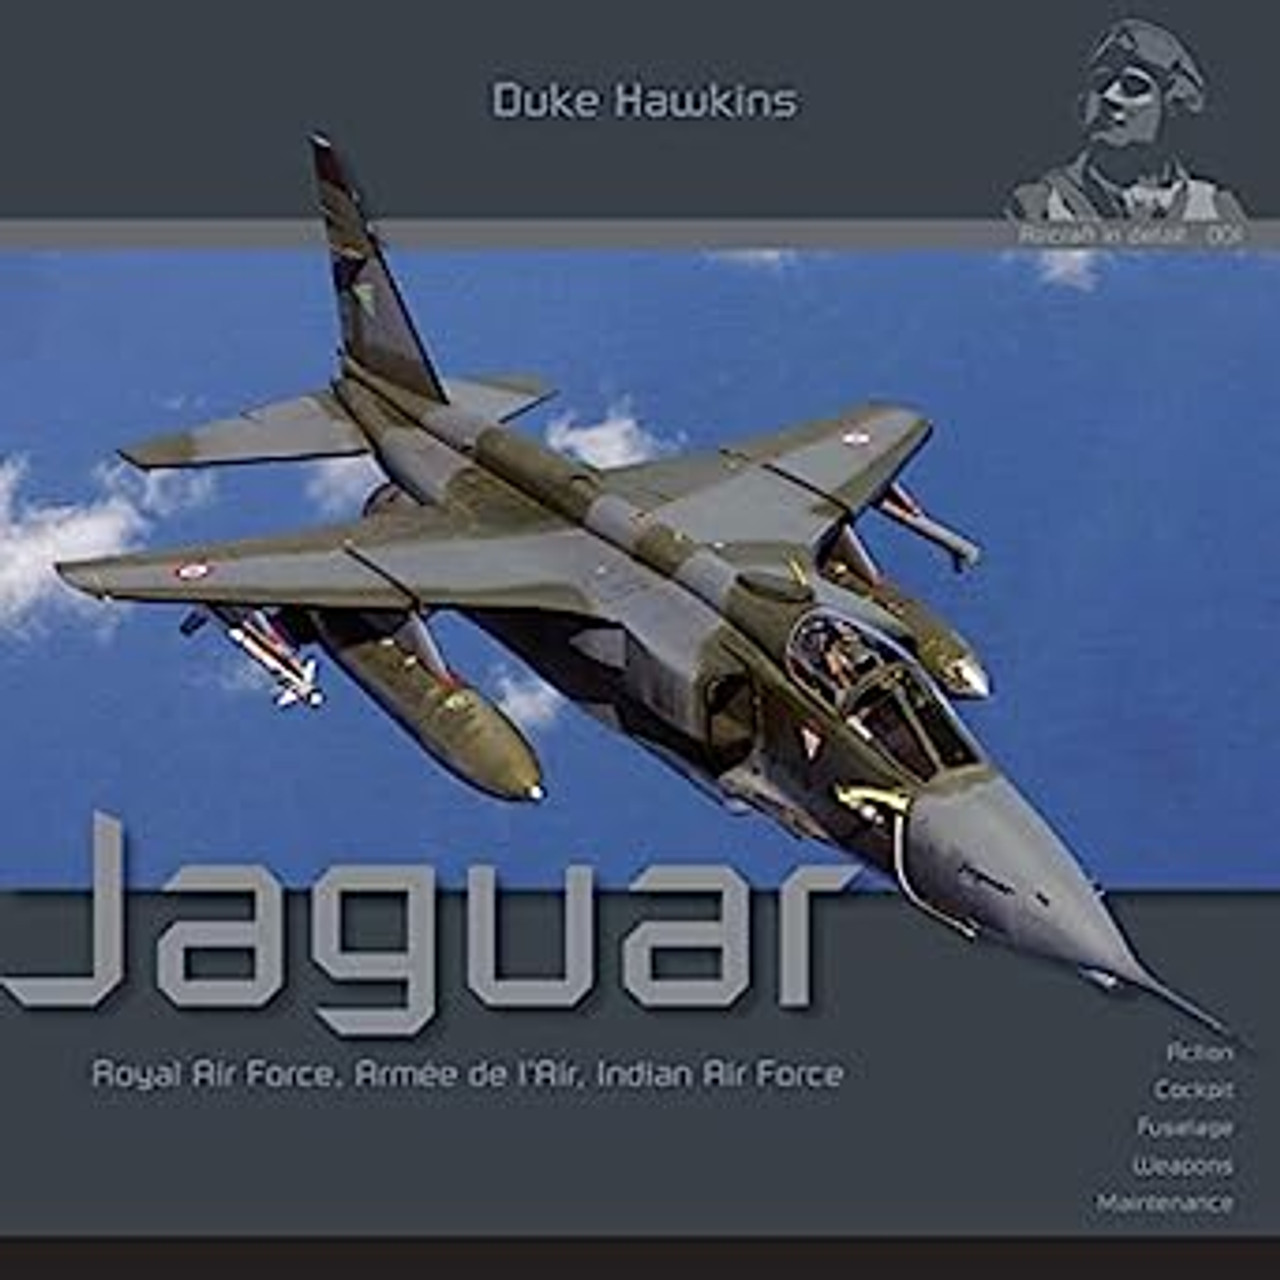 Aircraft in Detail 001: Jaguar